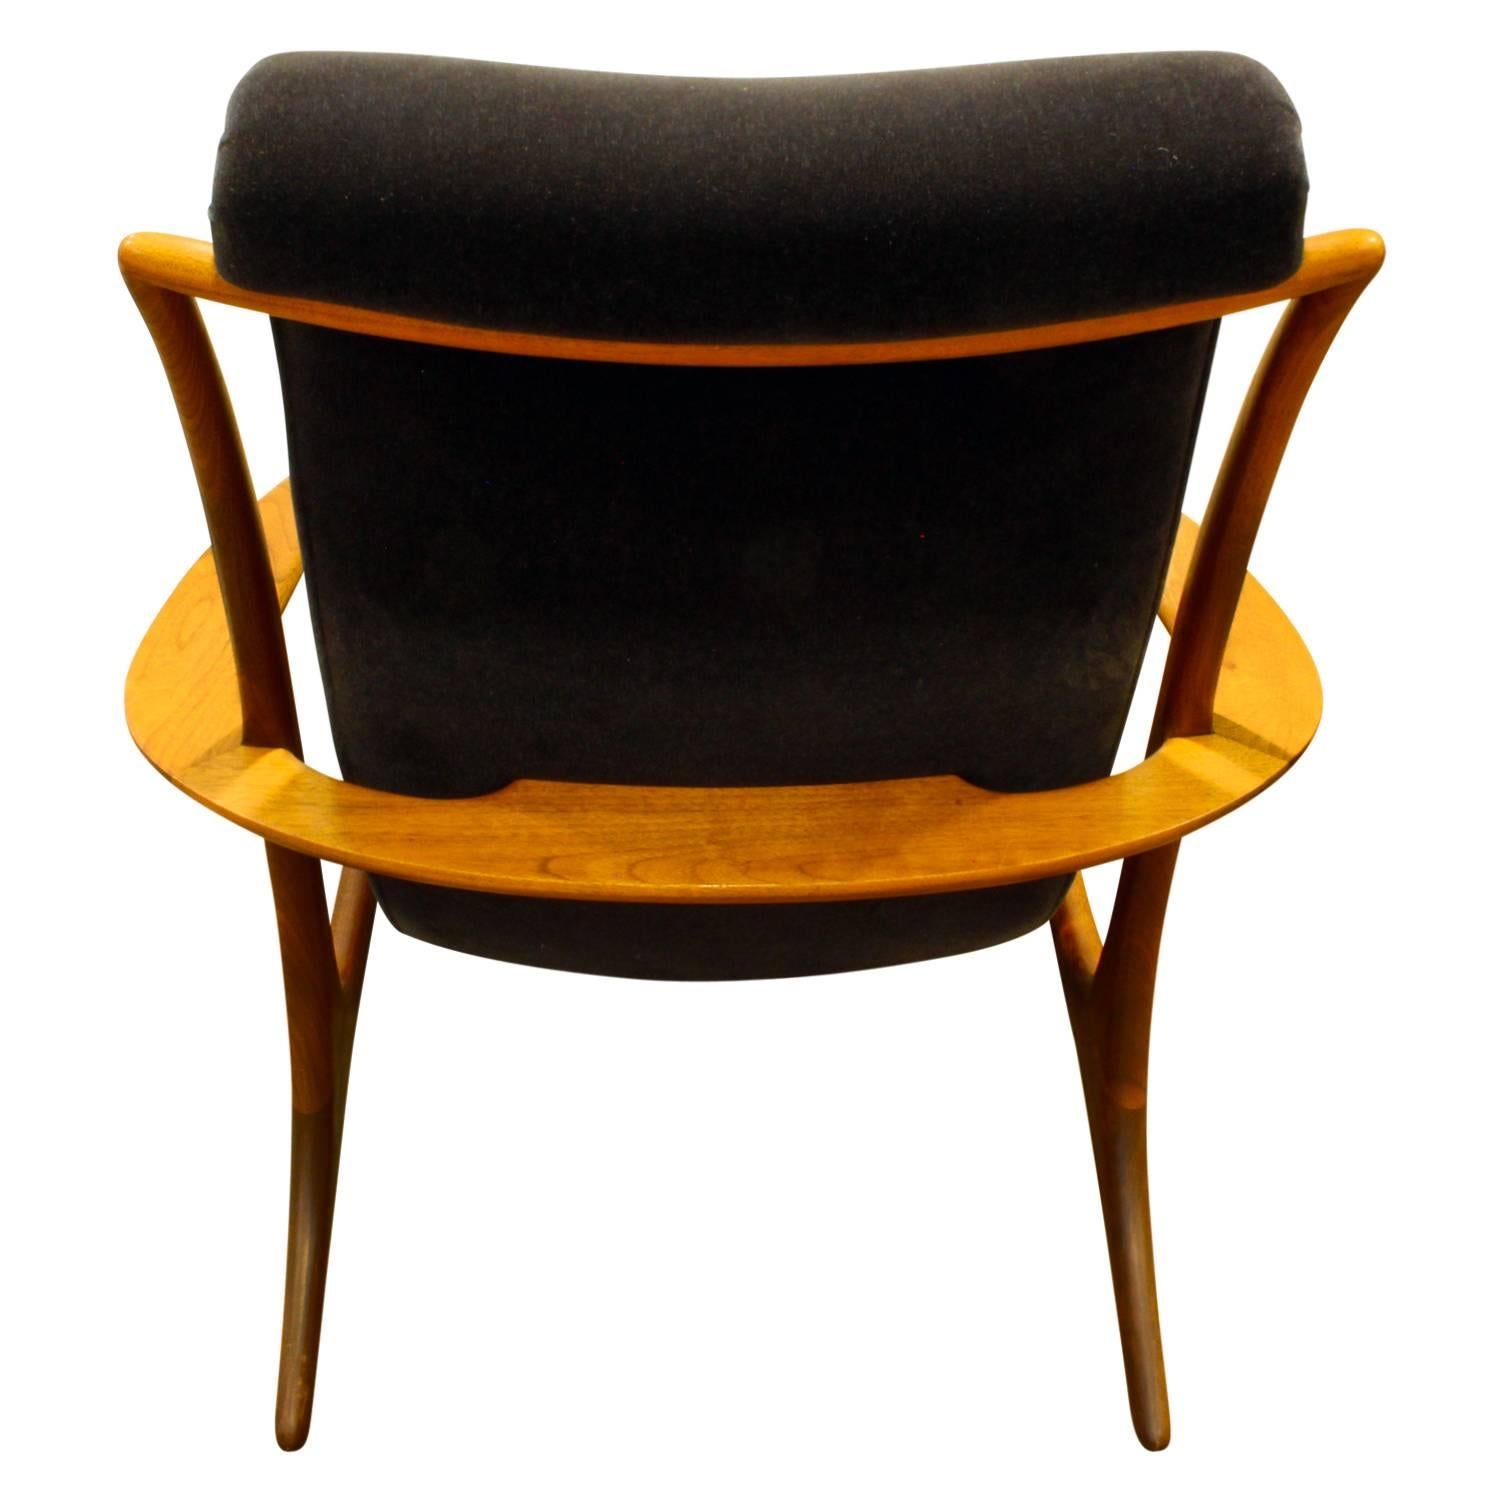 American Vladimir Kagan Sculpted Contour Chair, 1950s